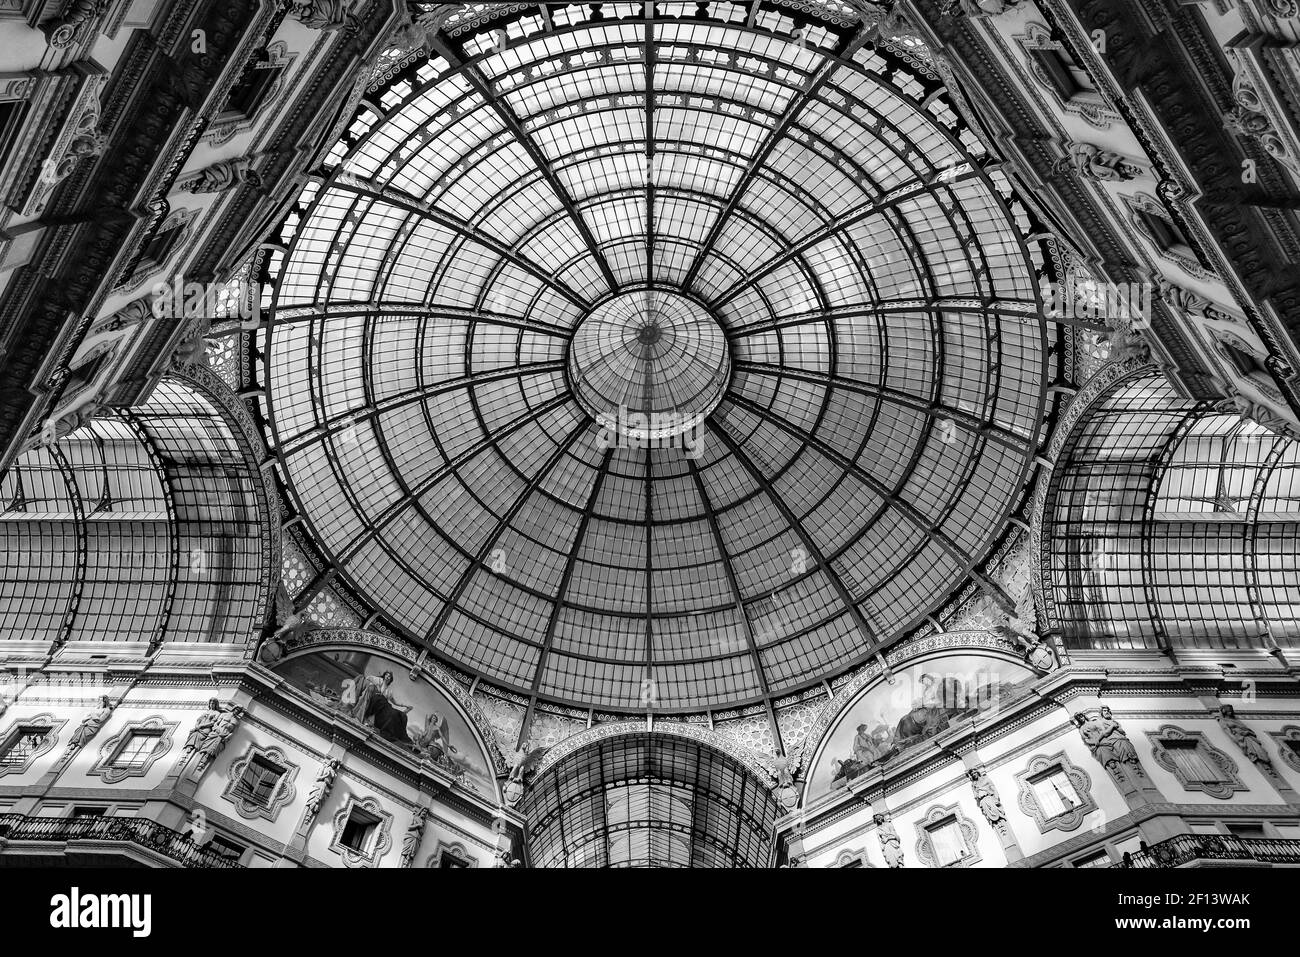 Cupola di vetro della Galleria Vittorio Emanuele II di Milano, il più antico centro commerciale d'Italia (bianco e nero) Foto Stock